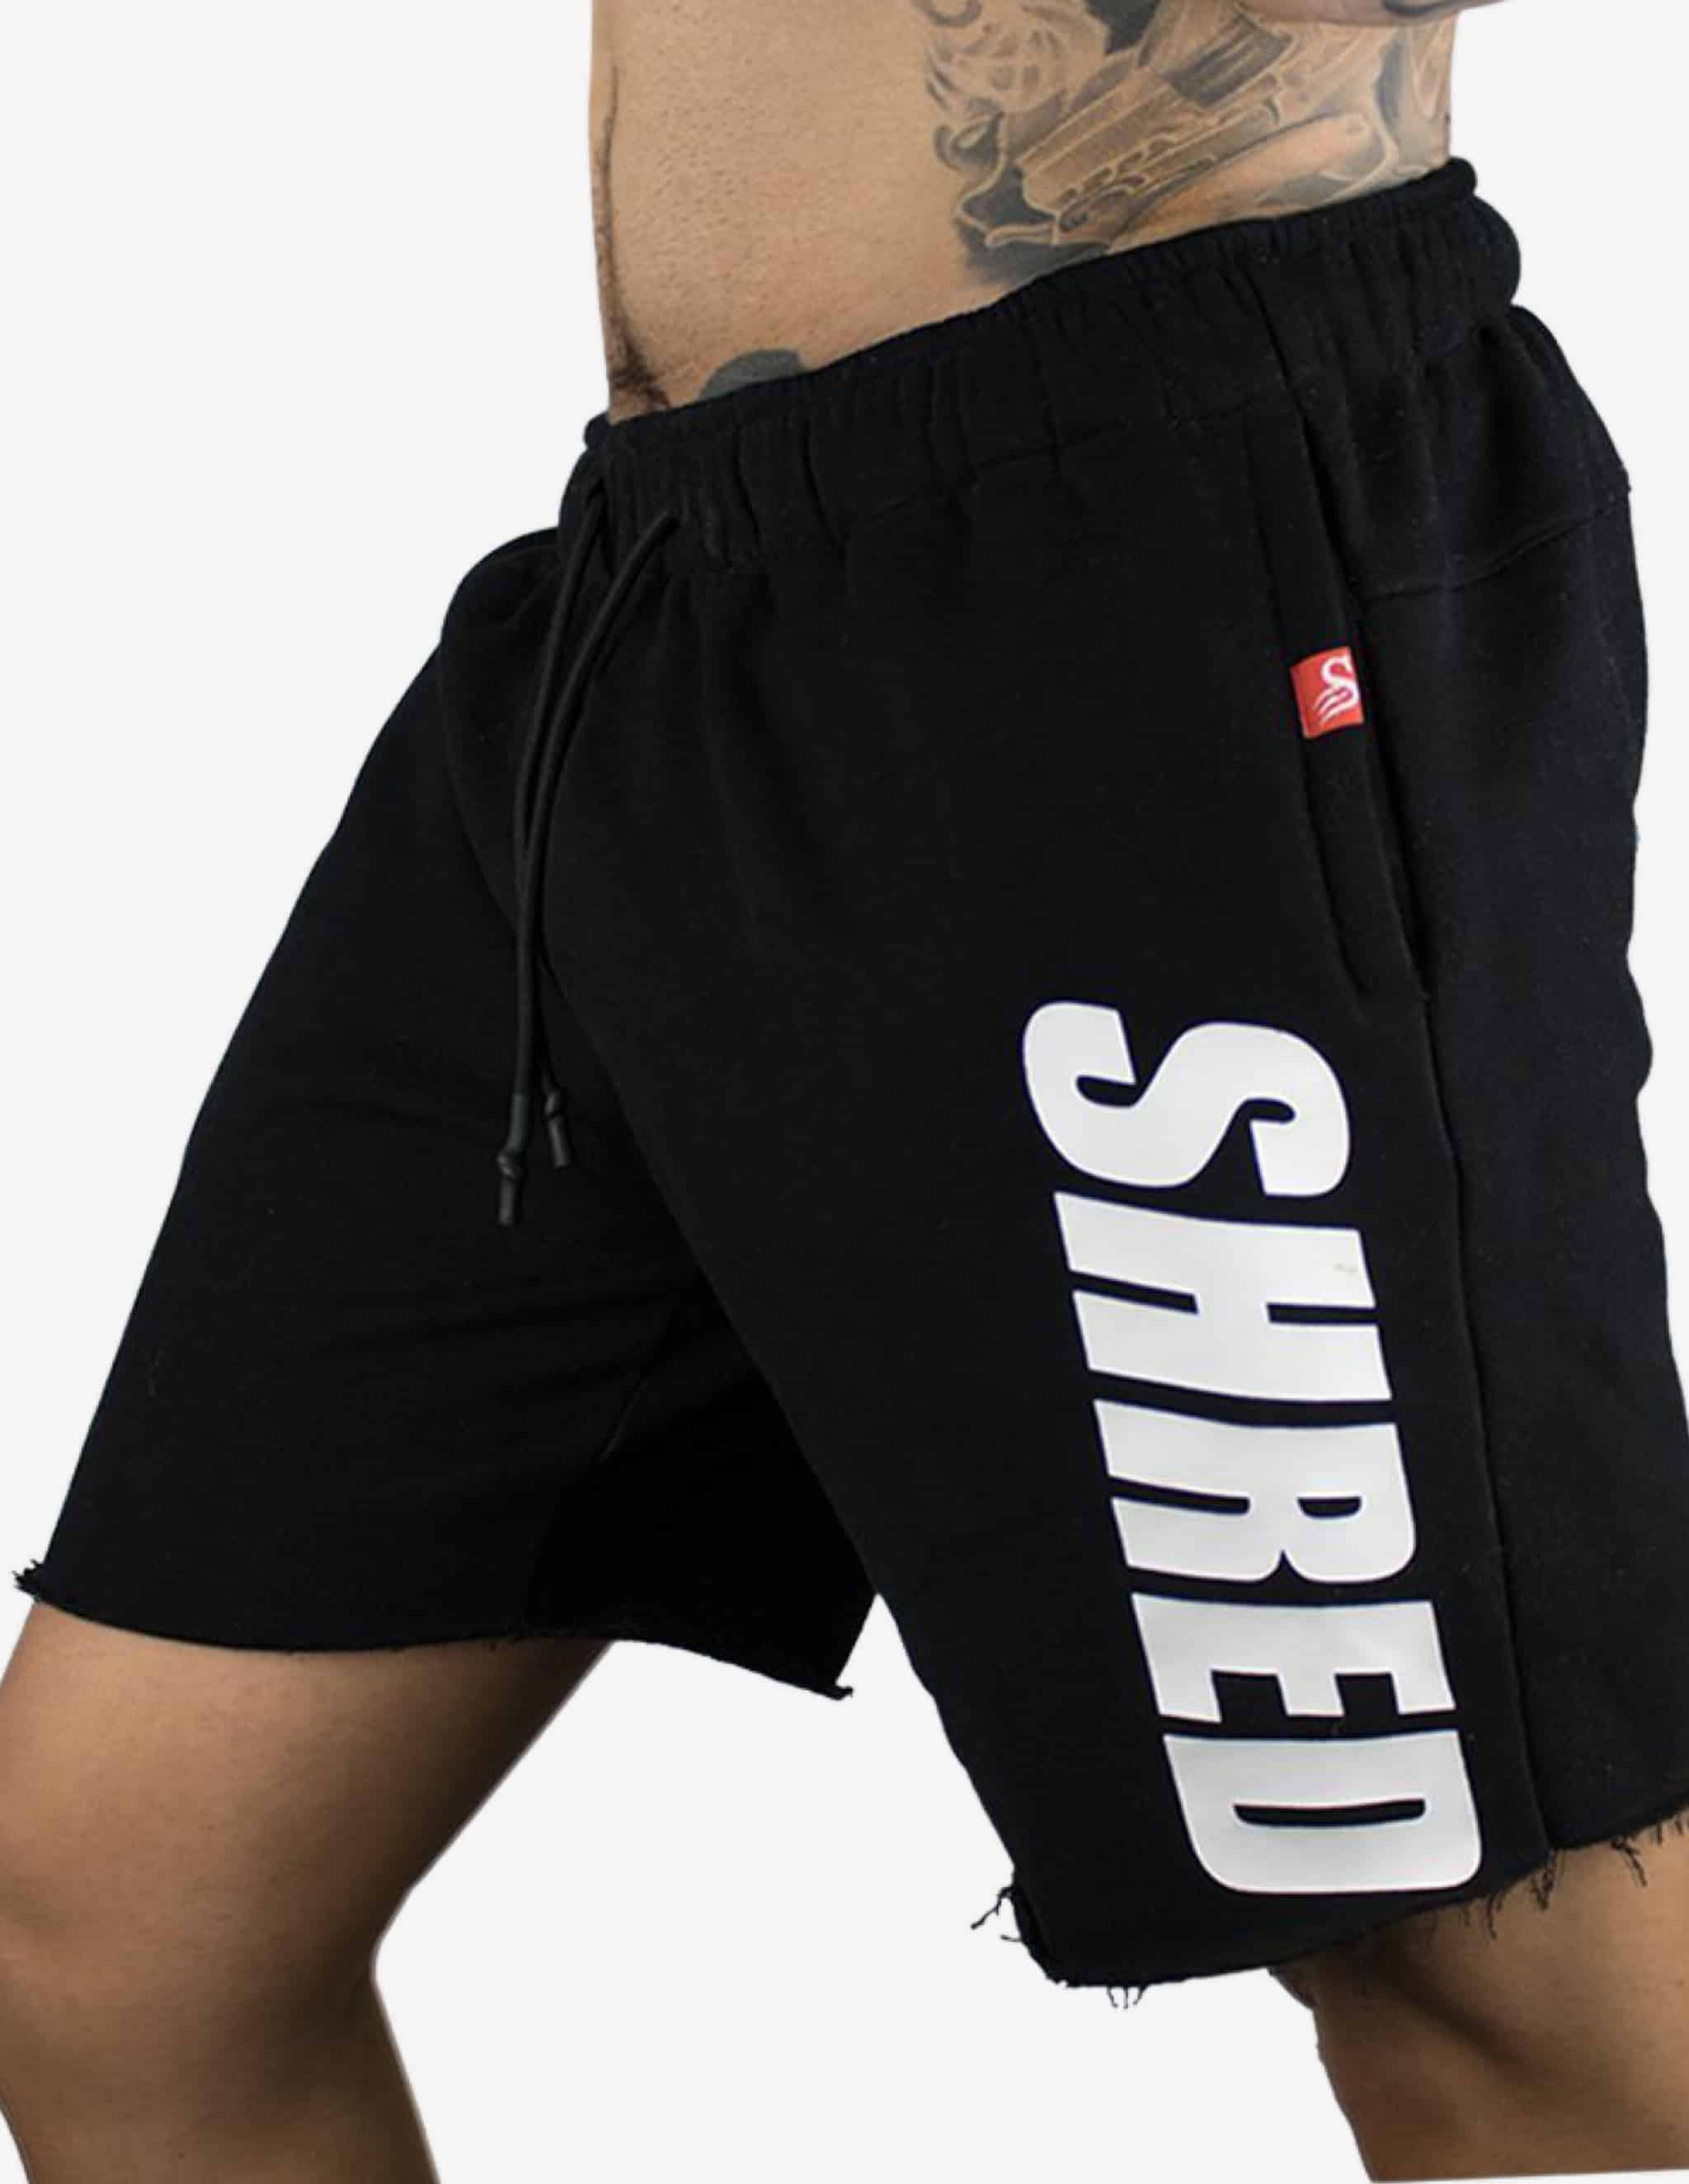 SHREDDED - Raw Fleece Shorts - Black-Shorts Man-Stay Shredded-Guru Muscle